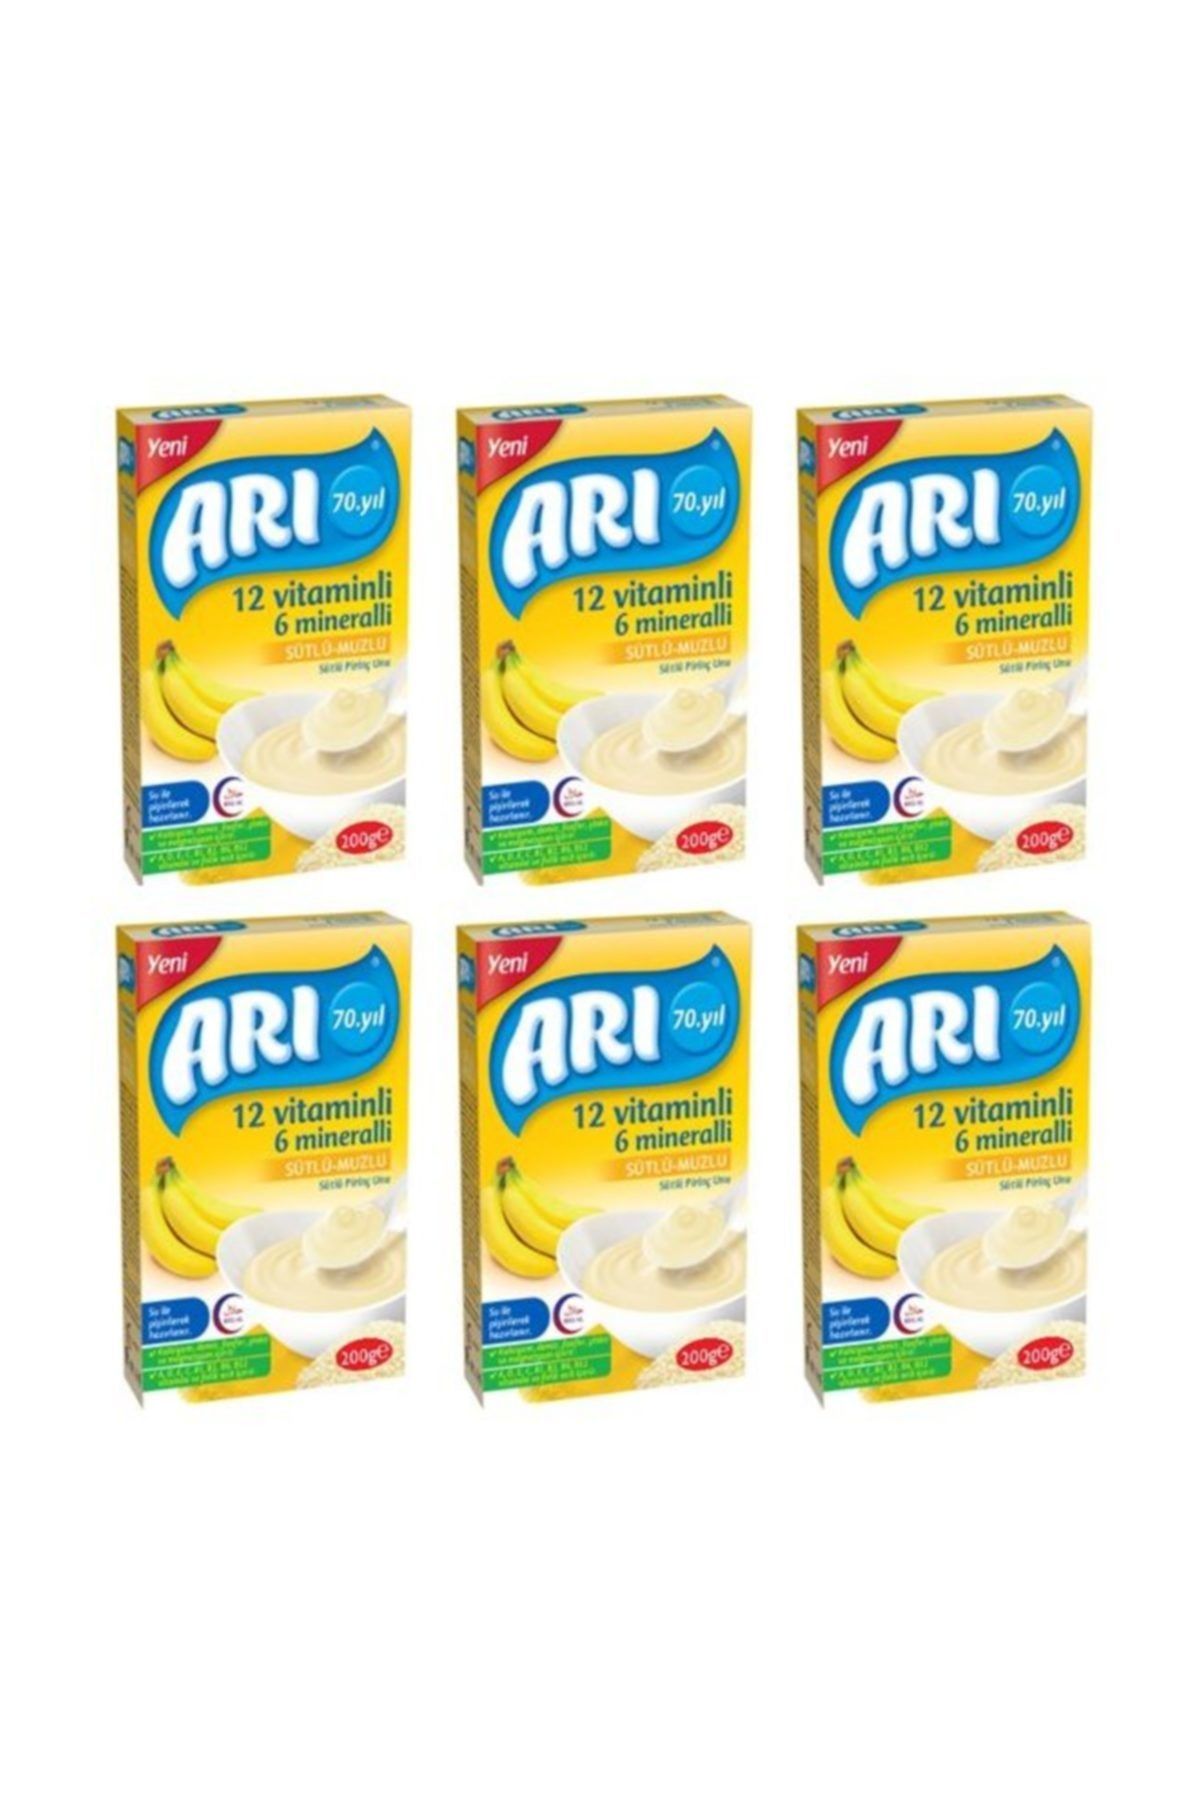 ARI 12 Vitaminli 6 Mineralli Sütlü Muzlu Pirinçli 200gr (6'lı Paket)